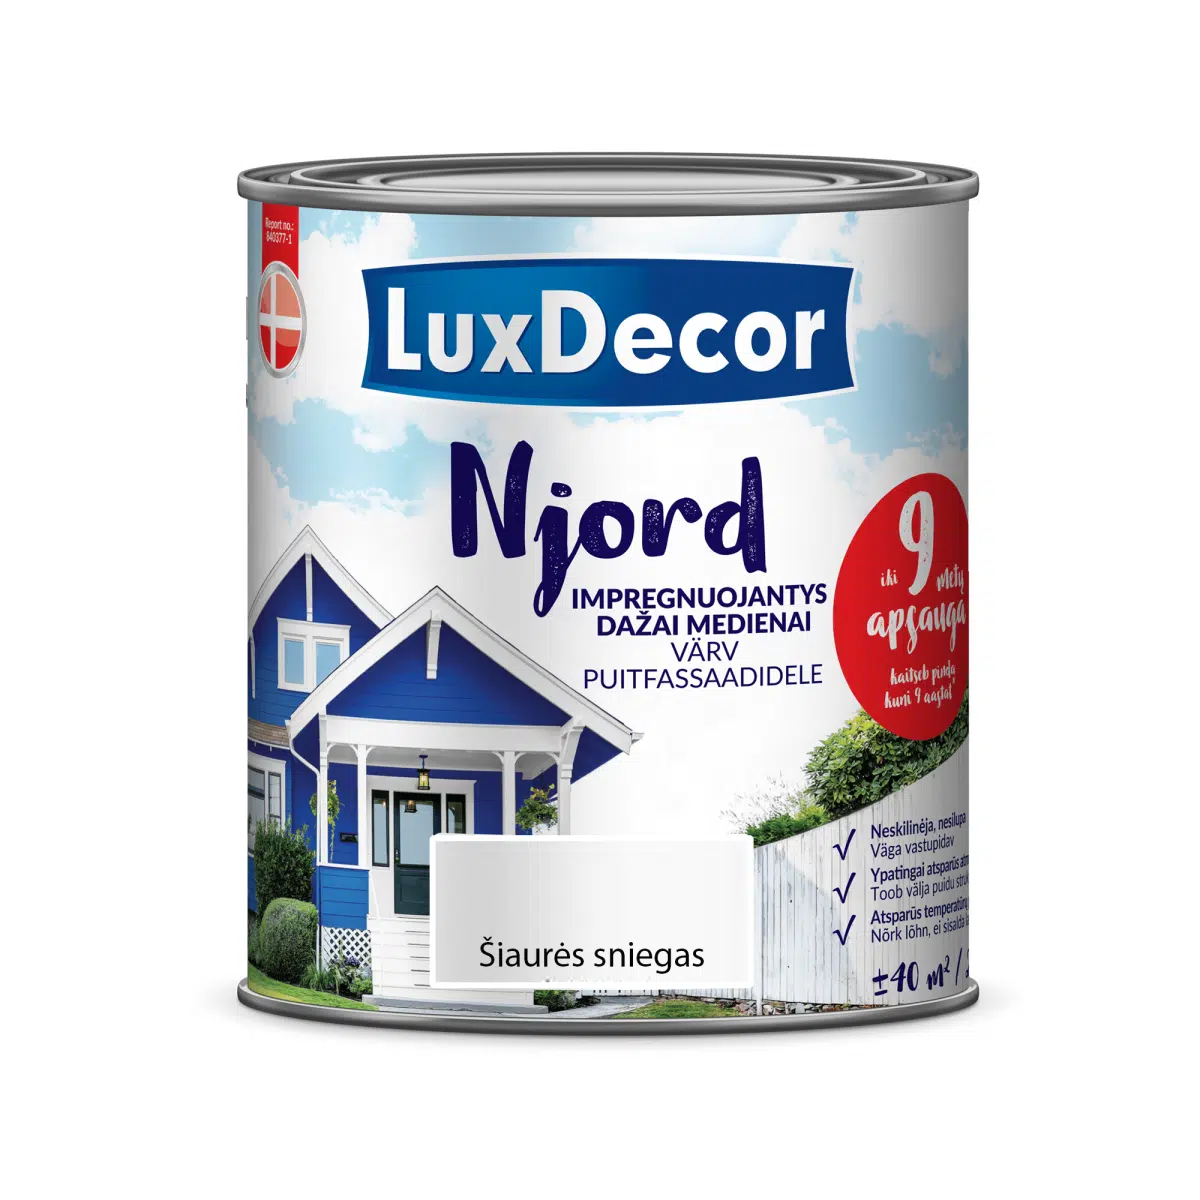 Njord impregnuojantys dažai medienai LuxDecor Kategorija: medienos impregnantai